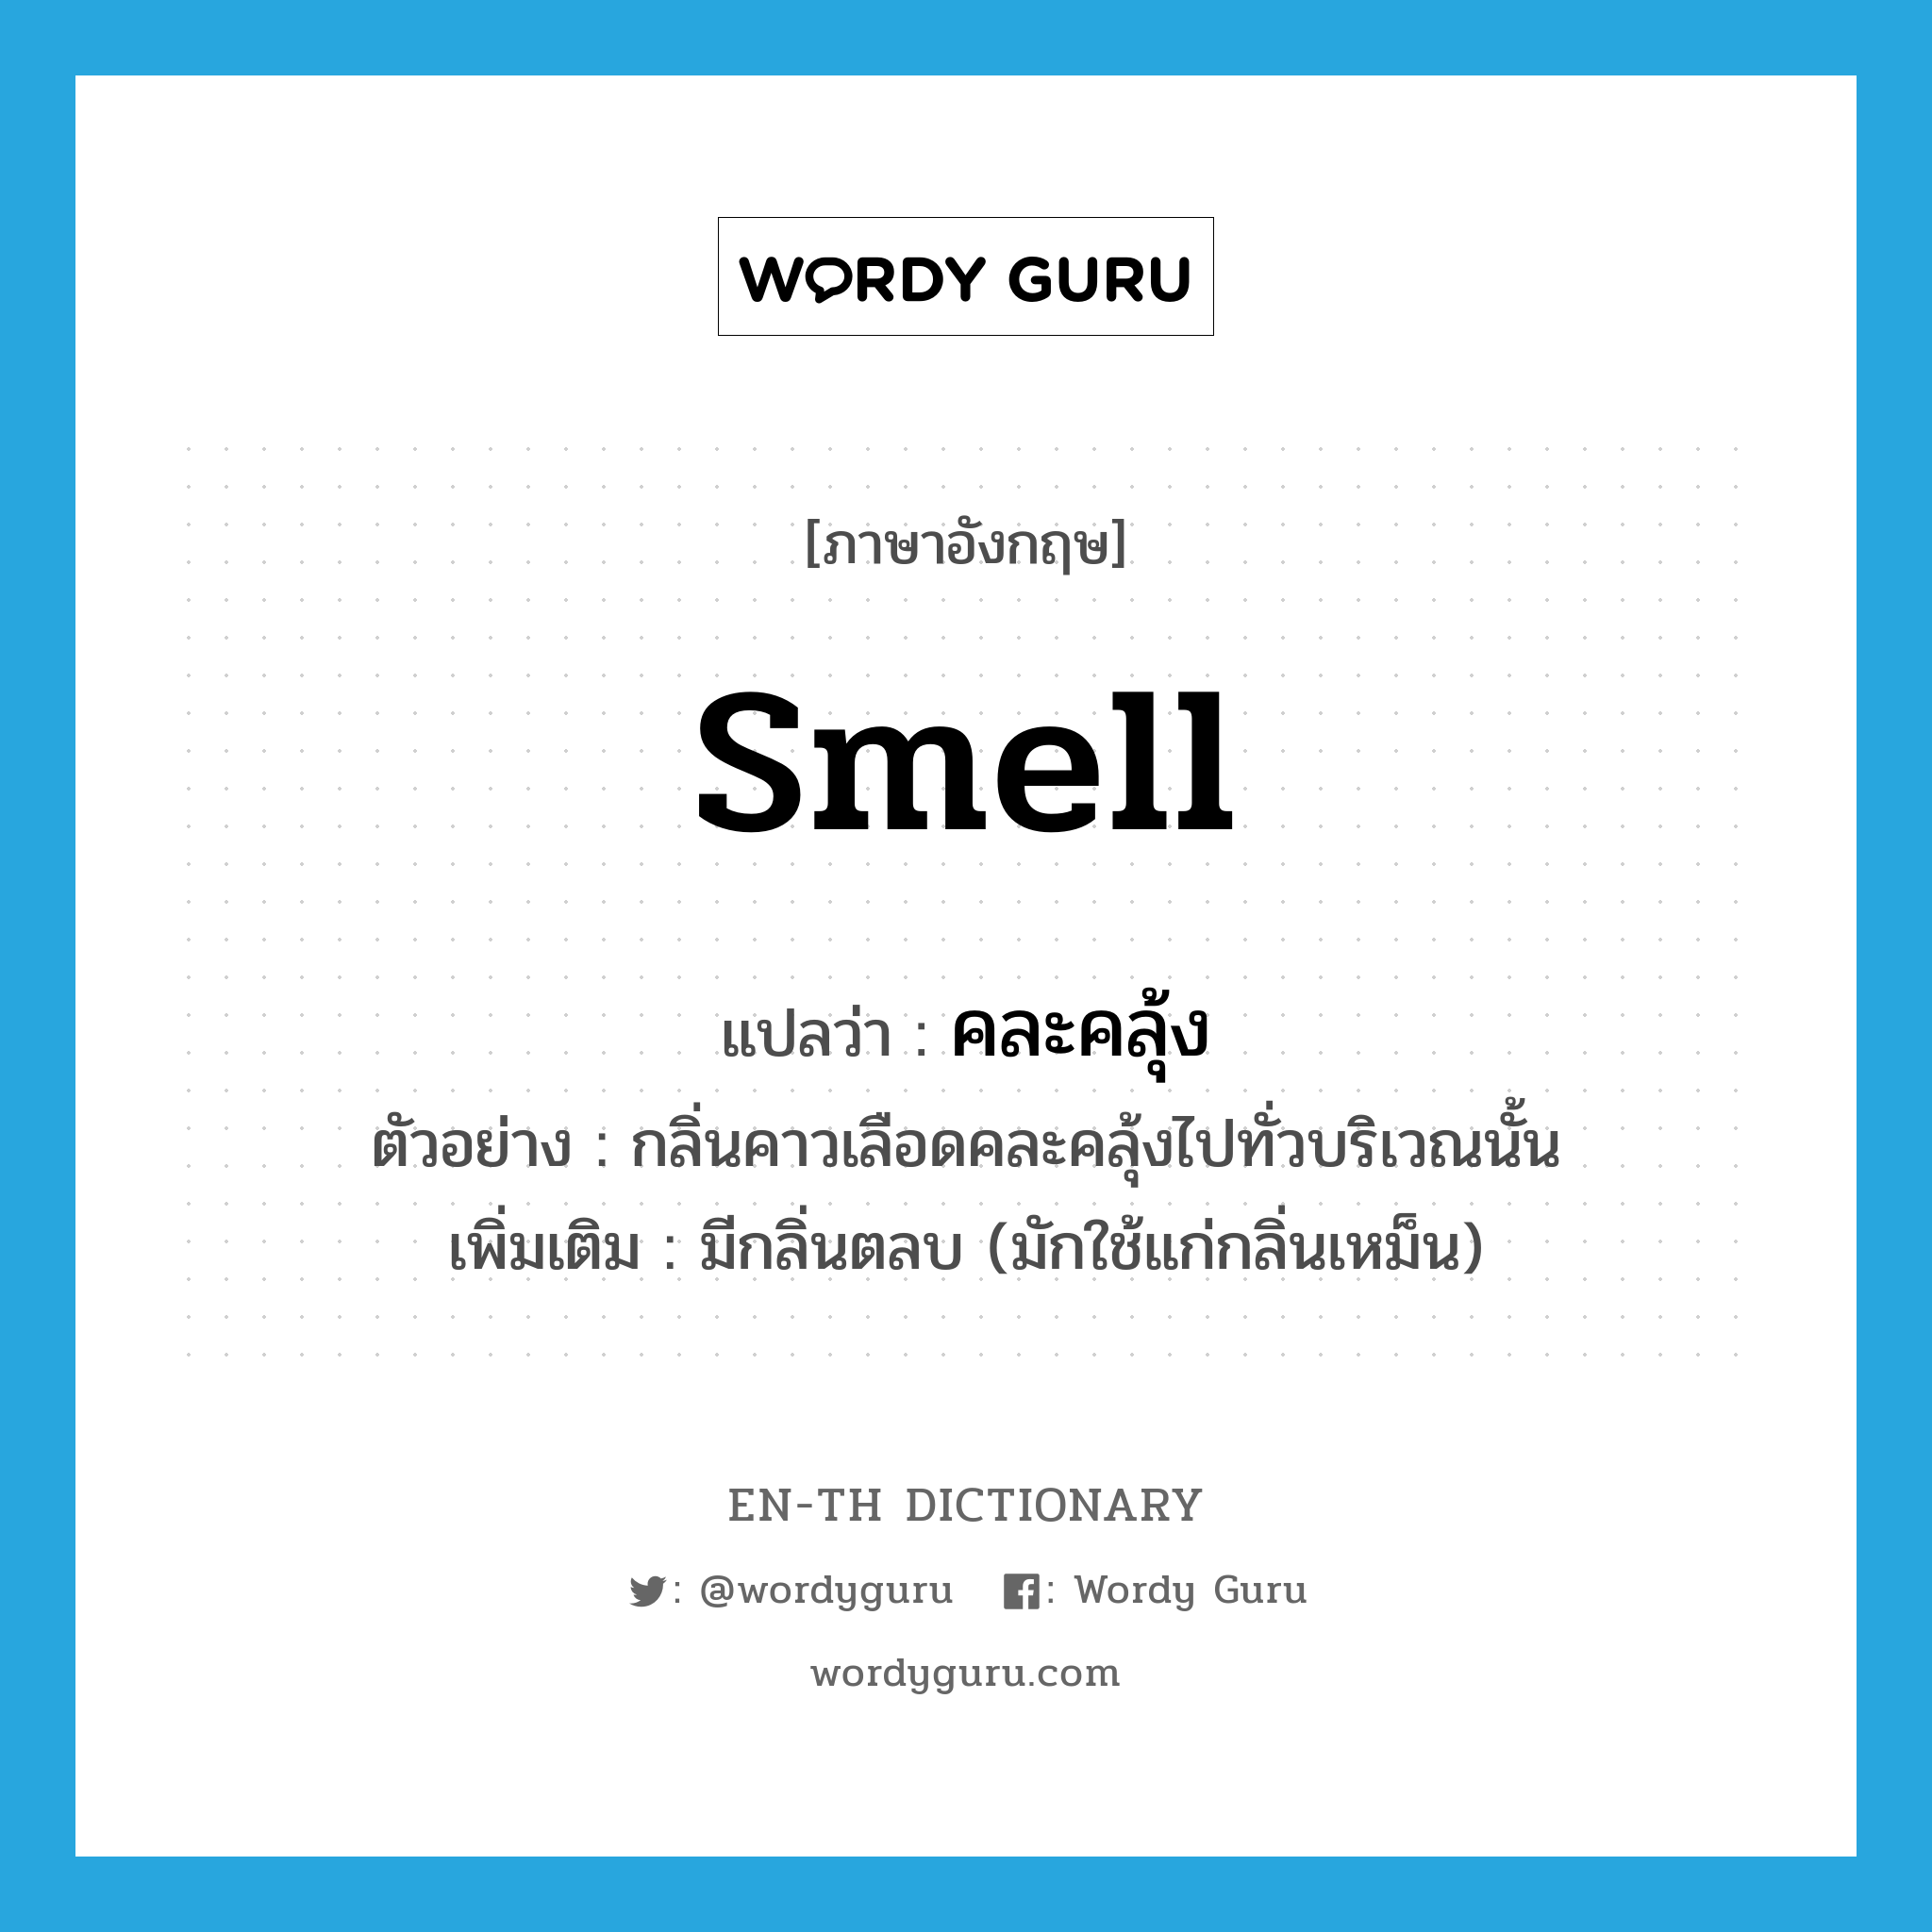 คละคลุ้ง ภาษาอังกฤษ?, คำศัพท์ภาษาอังกฤษ คละคลุ้ง แปลว่า smell ประเภท V ตัวอย่าง กลิ่นคาวเลือดคละคลุ้งไปทั่วบริเวณนั้น เพิ่มเติม มีกลิ่นตลบ (มักใช้แก่กลิ่นเหม็น) หมวด V